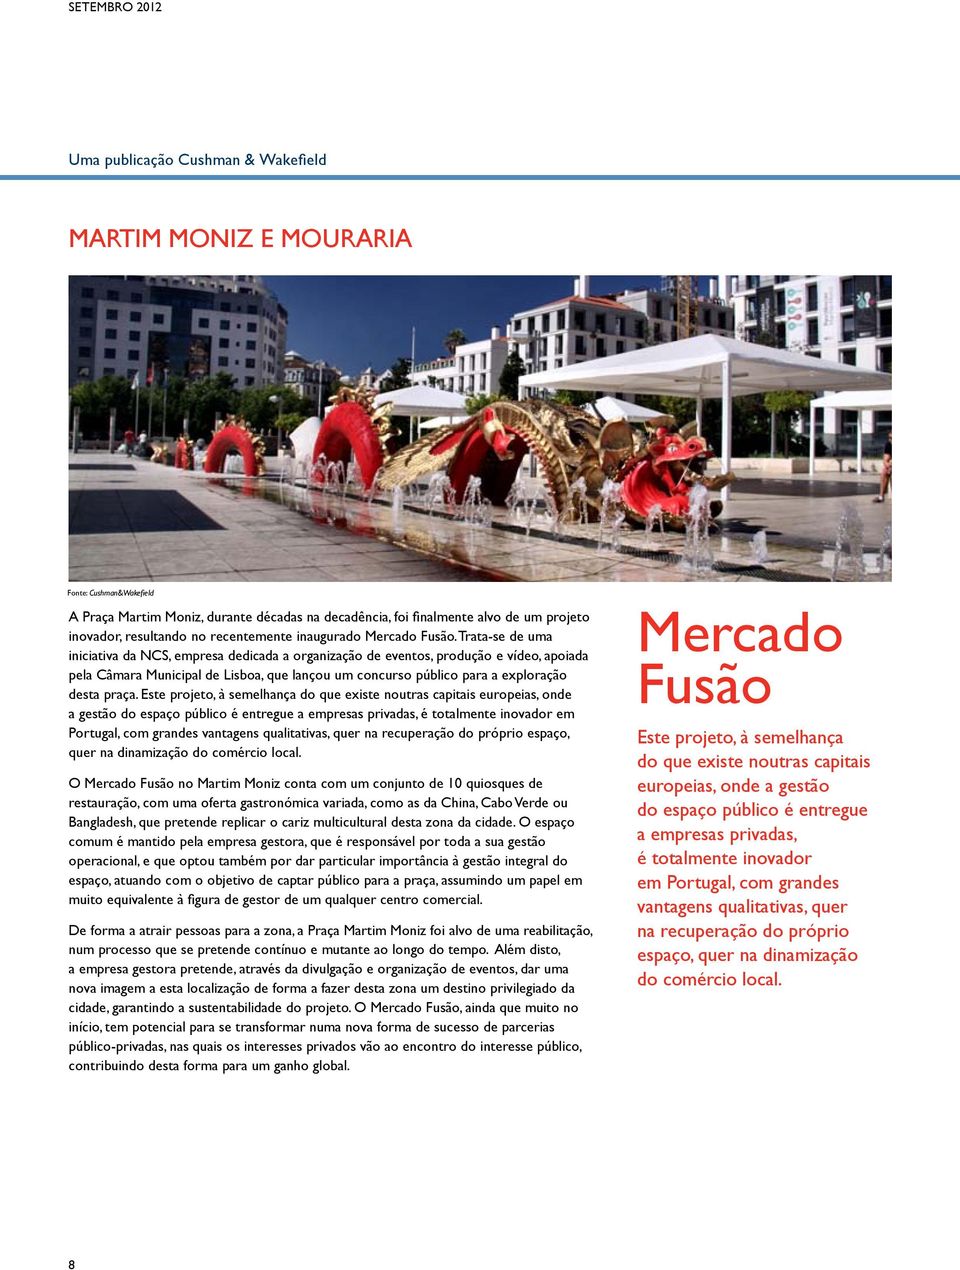 Este projeto, à semelhança do que existe noutras capitais europeias, onde a gestão do espaço público é entregue a empresas privadas, é totalmente inovador em Portugal, com grandes vantagens